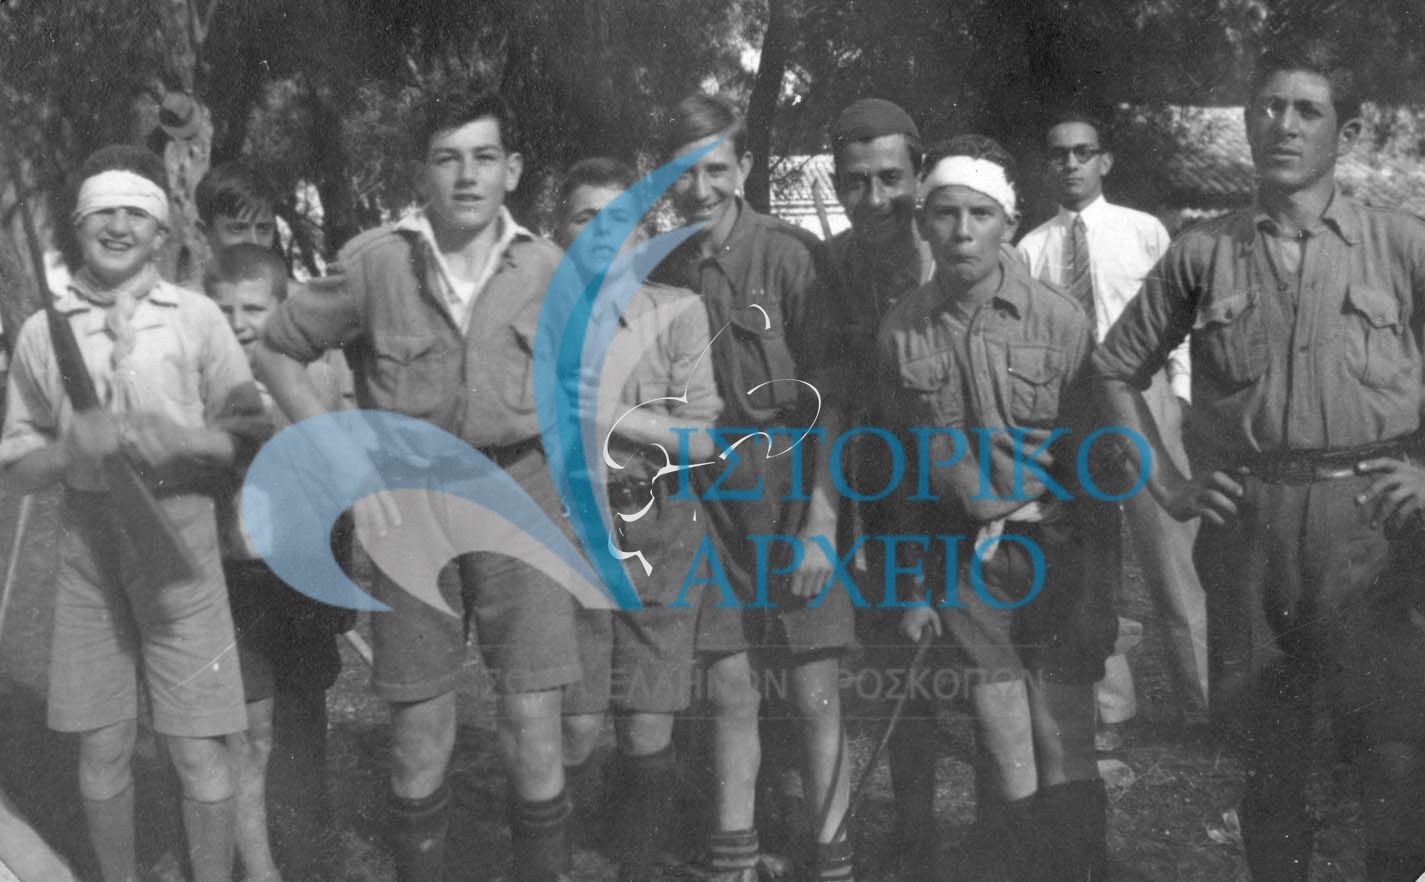 Ημερήσια εκδρομή των προσκόπων Κέρκυρας στις Μπενίτσες τη Καθαρά Δευτέρα του 1930.